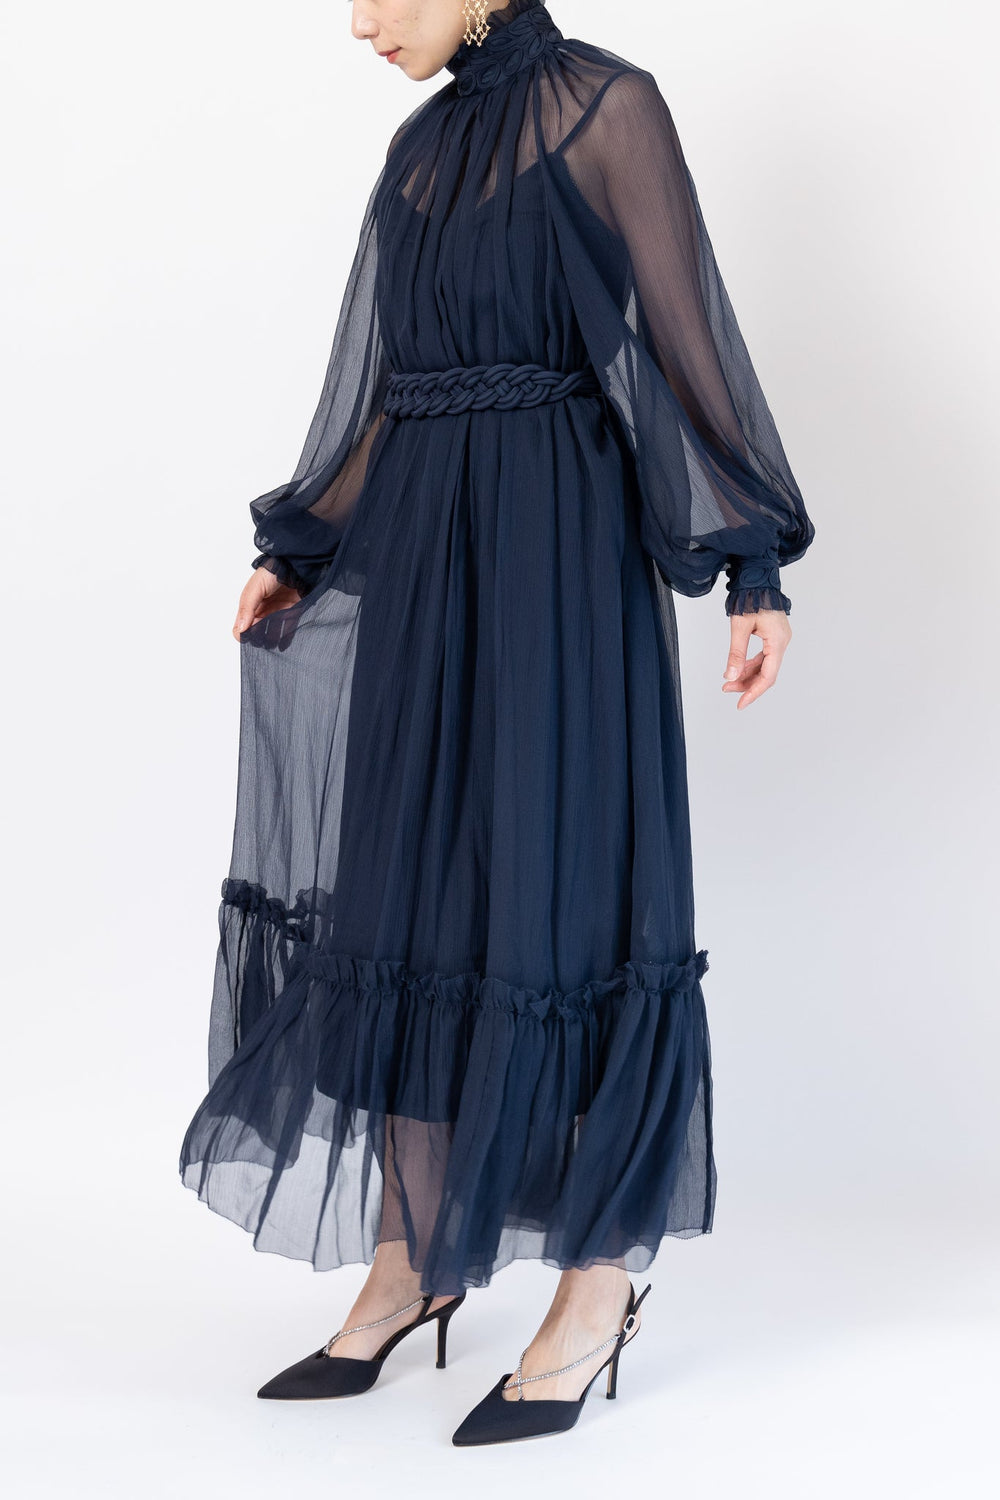 Zimmermann - ロングドレス - シルクジョーゼット 刺繍 ギャザー入り ベルト付きドレス - Rentable Runway